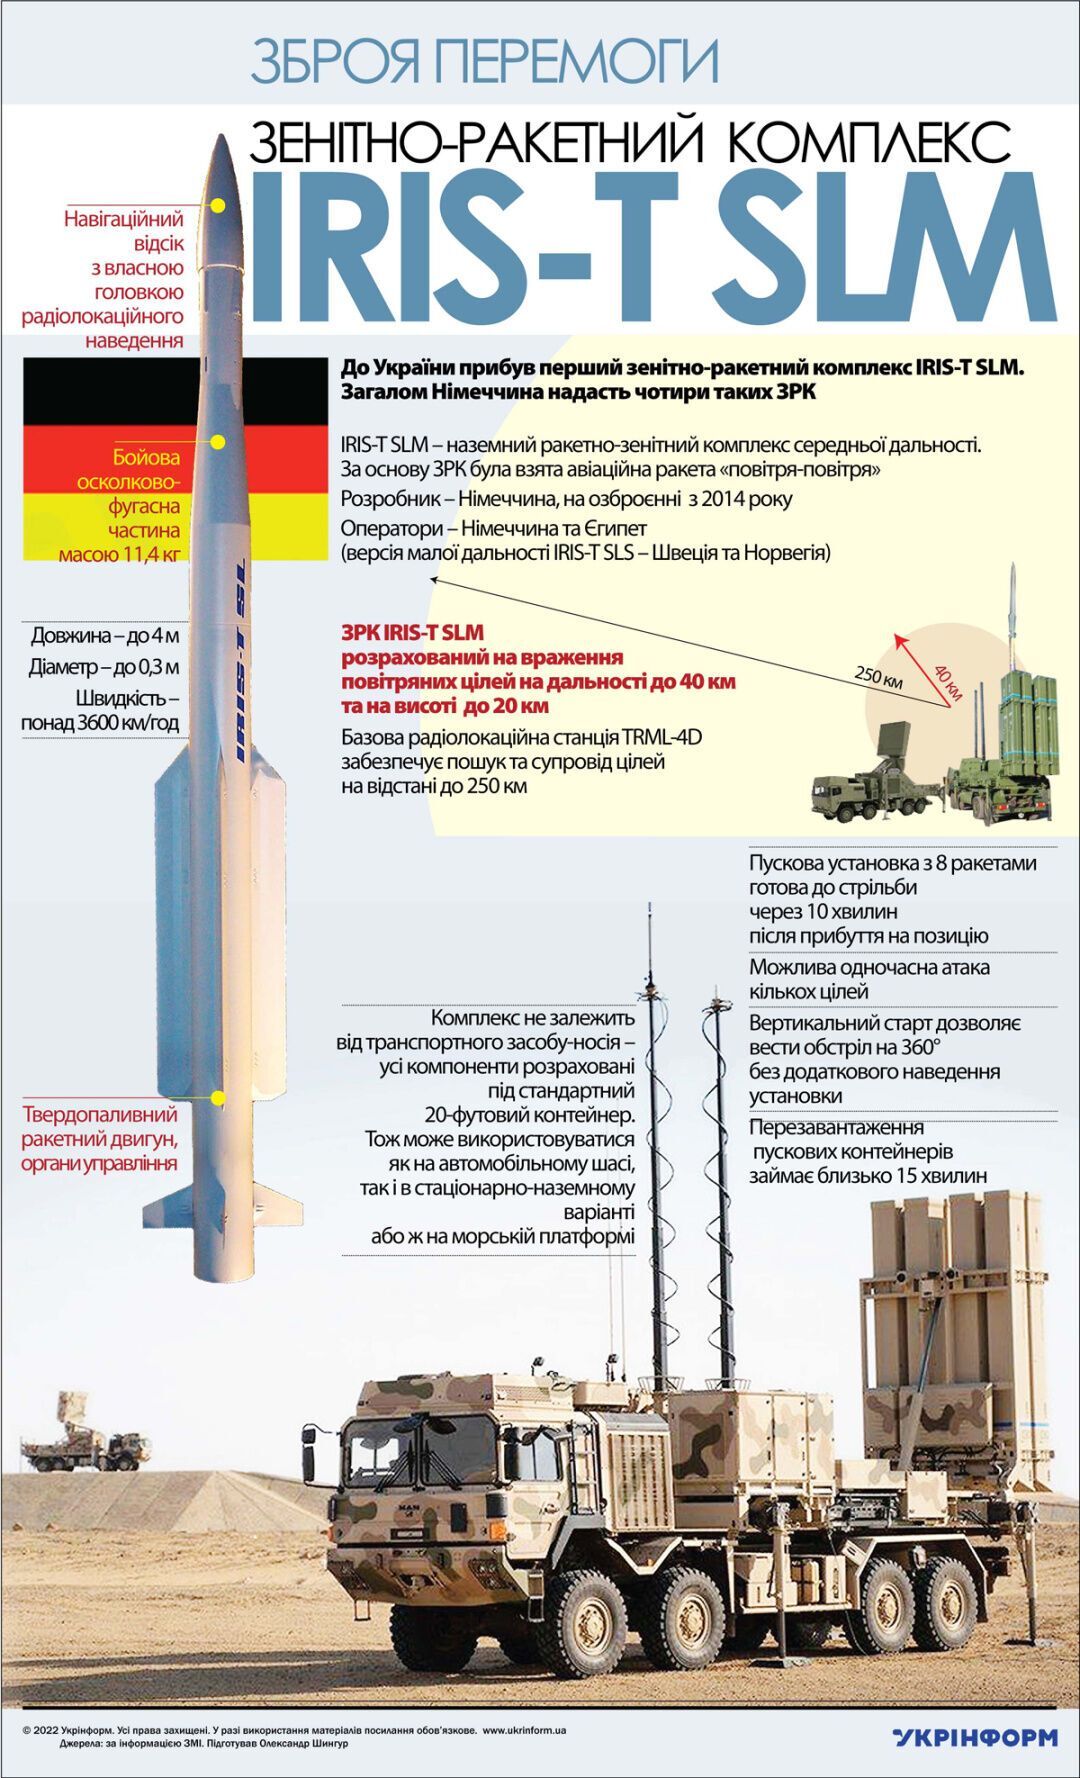 Ракеты IRIS-T для Украины: Германия дополнила список помощи, которую пришлет ВСУ (детали)